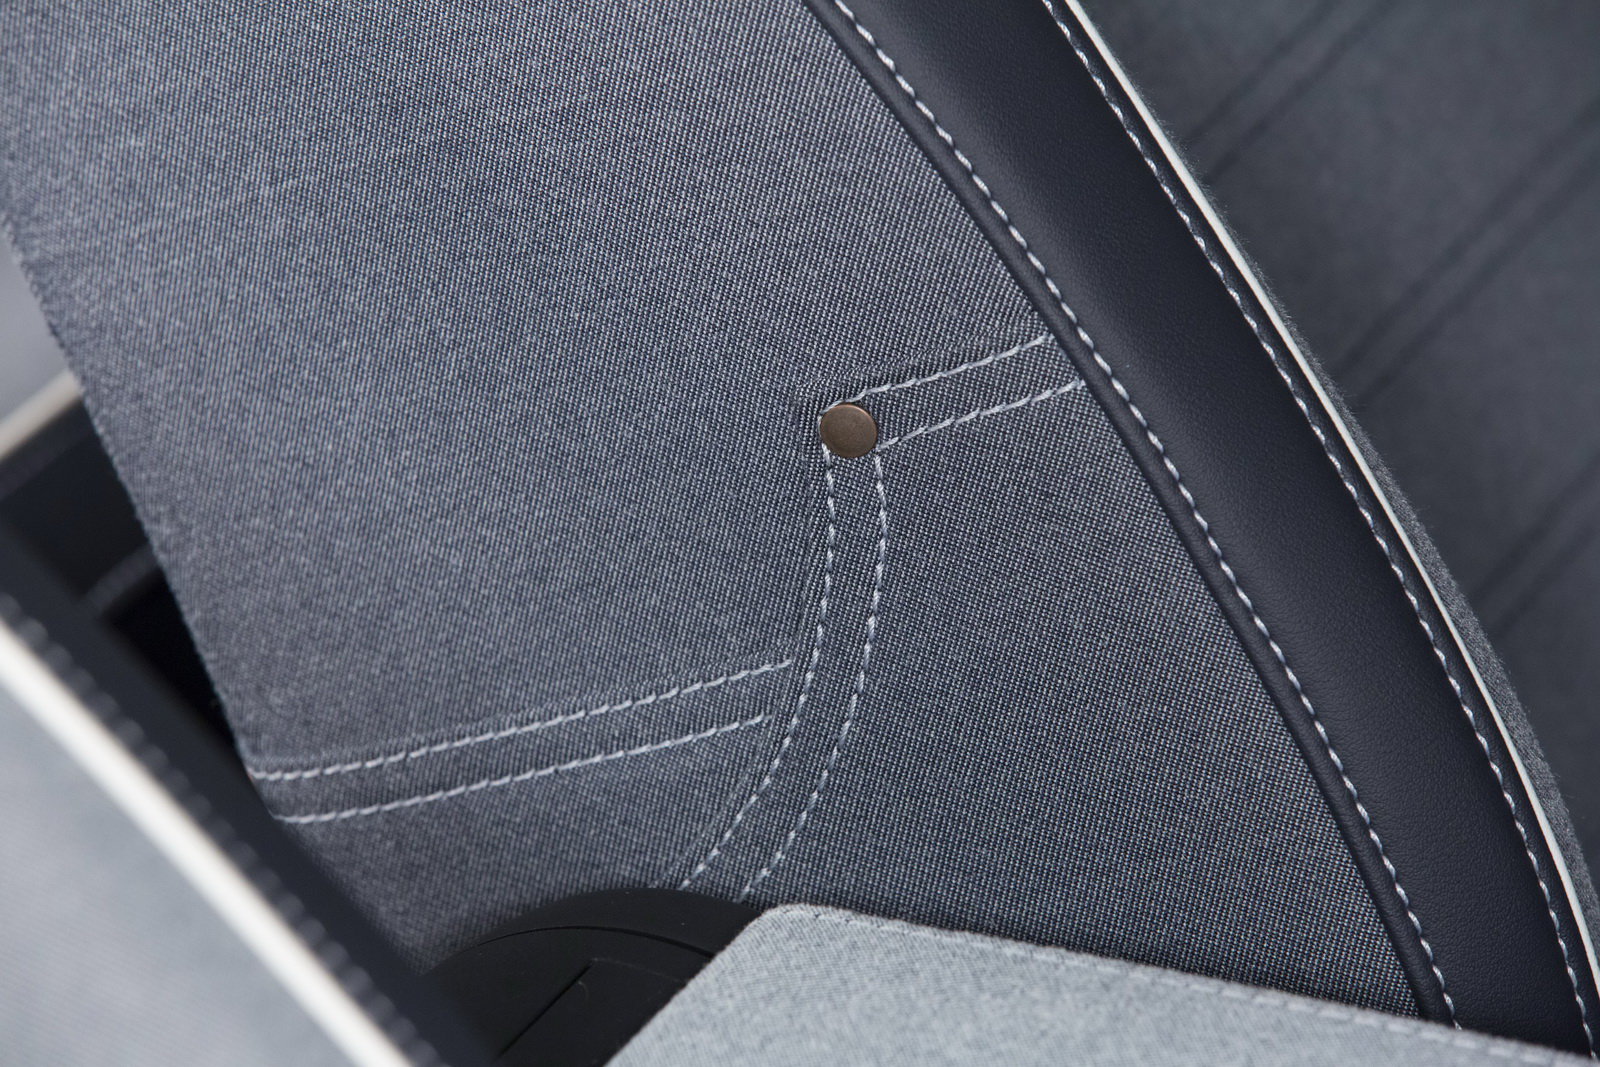 Čalounění sedadel připomíná džínovinu, Volkswagen Beetle Denim.